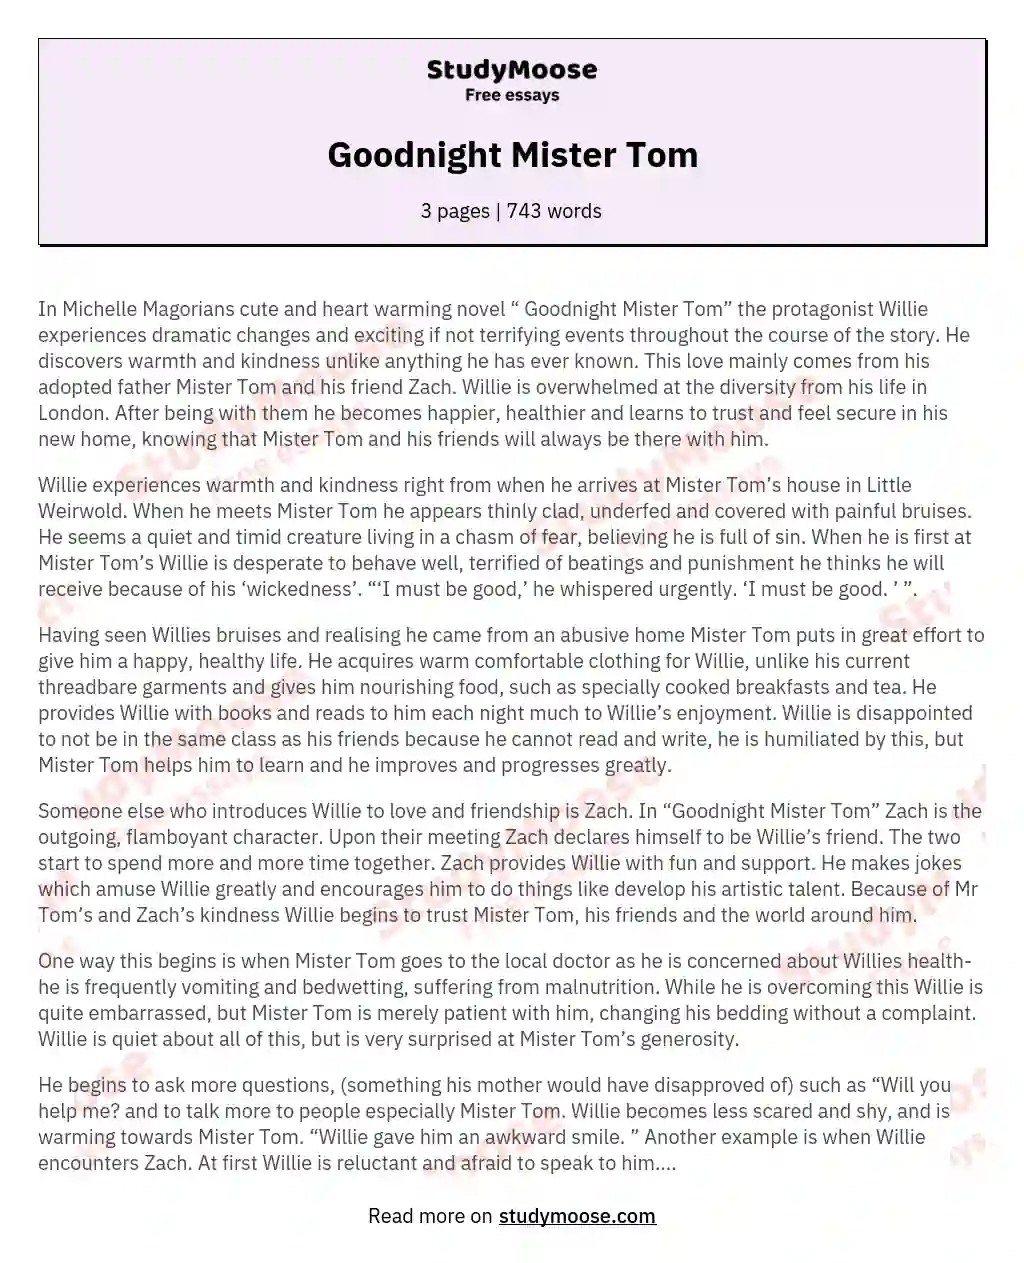 Goodnight Mister Tom essay